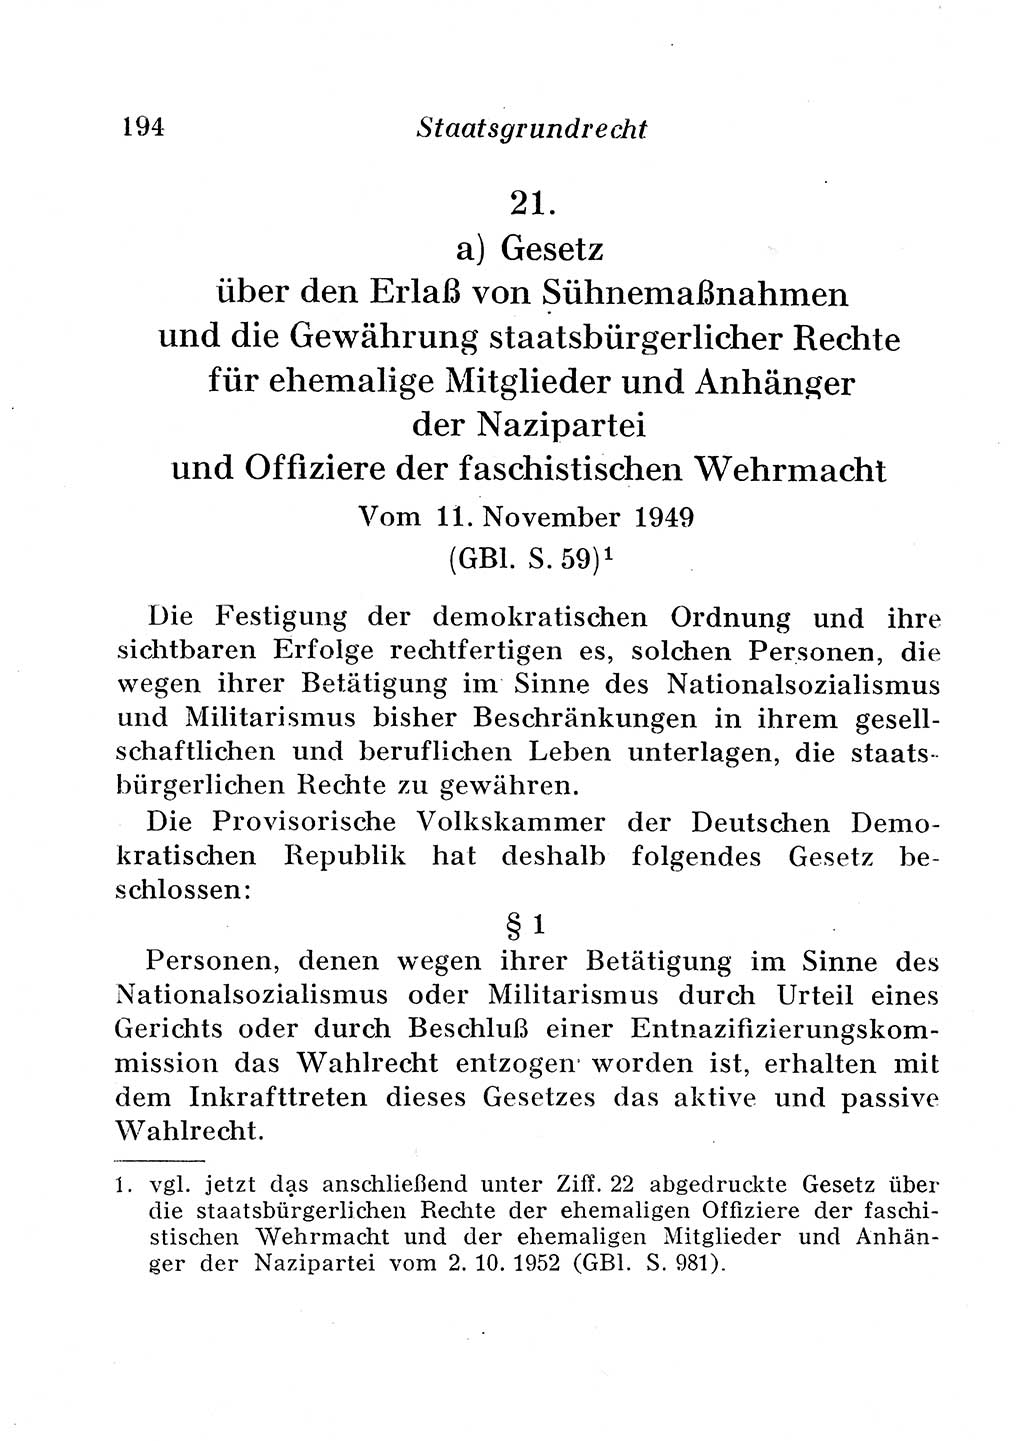 Staats- und verwaltungsrechtliche Gesetze der Deutschen Demokratischen Republik (DDR) 1958, Seite 194 (StVerwR Ges. DDR 1958, S. 194)